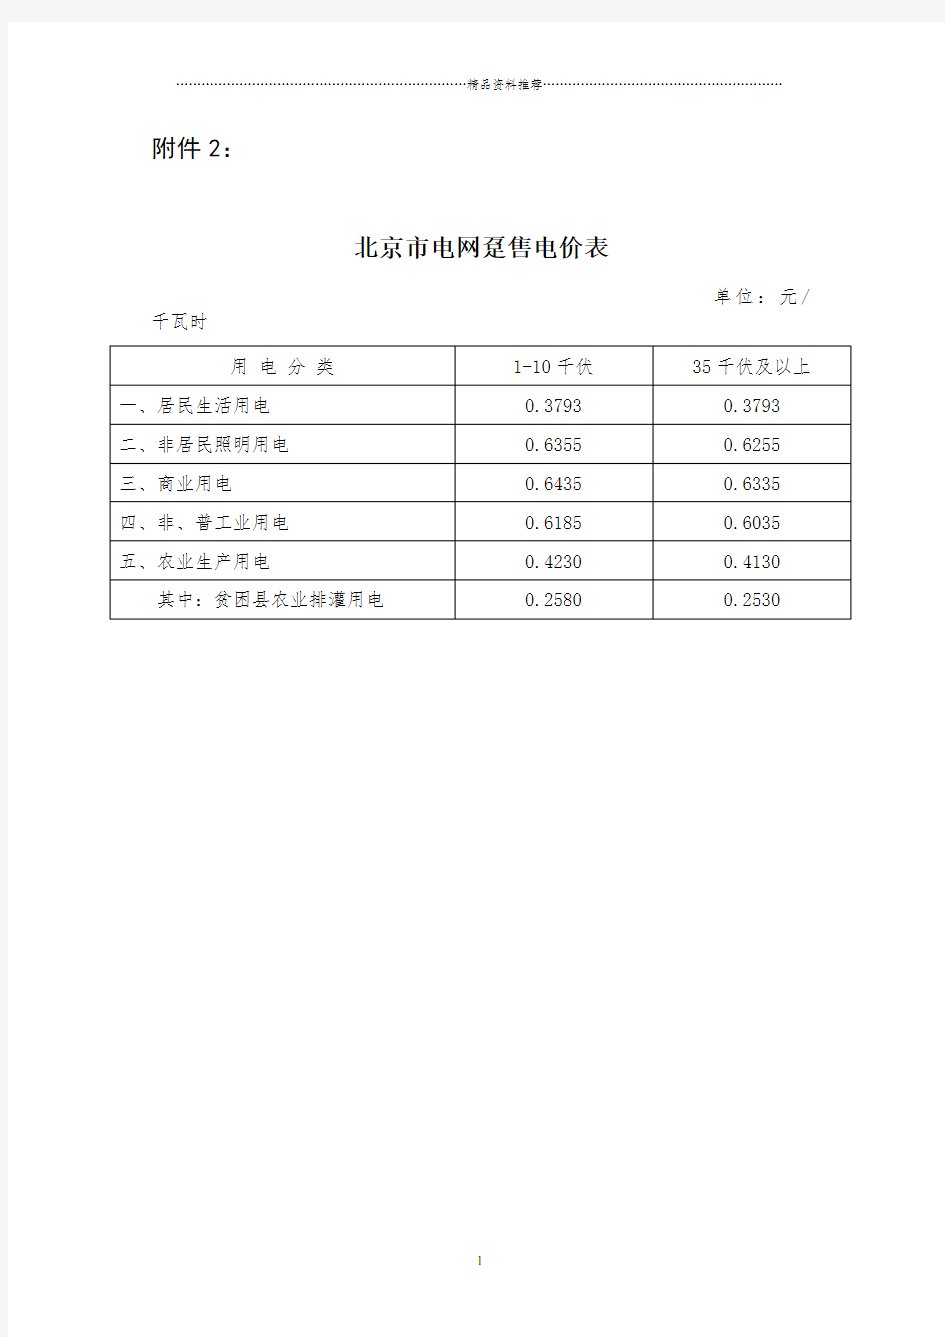 北京地区电价表-北京市发展和改革委员会